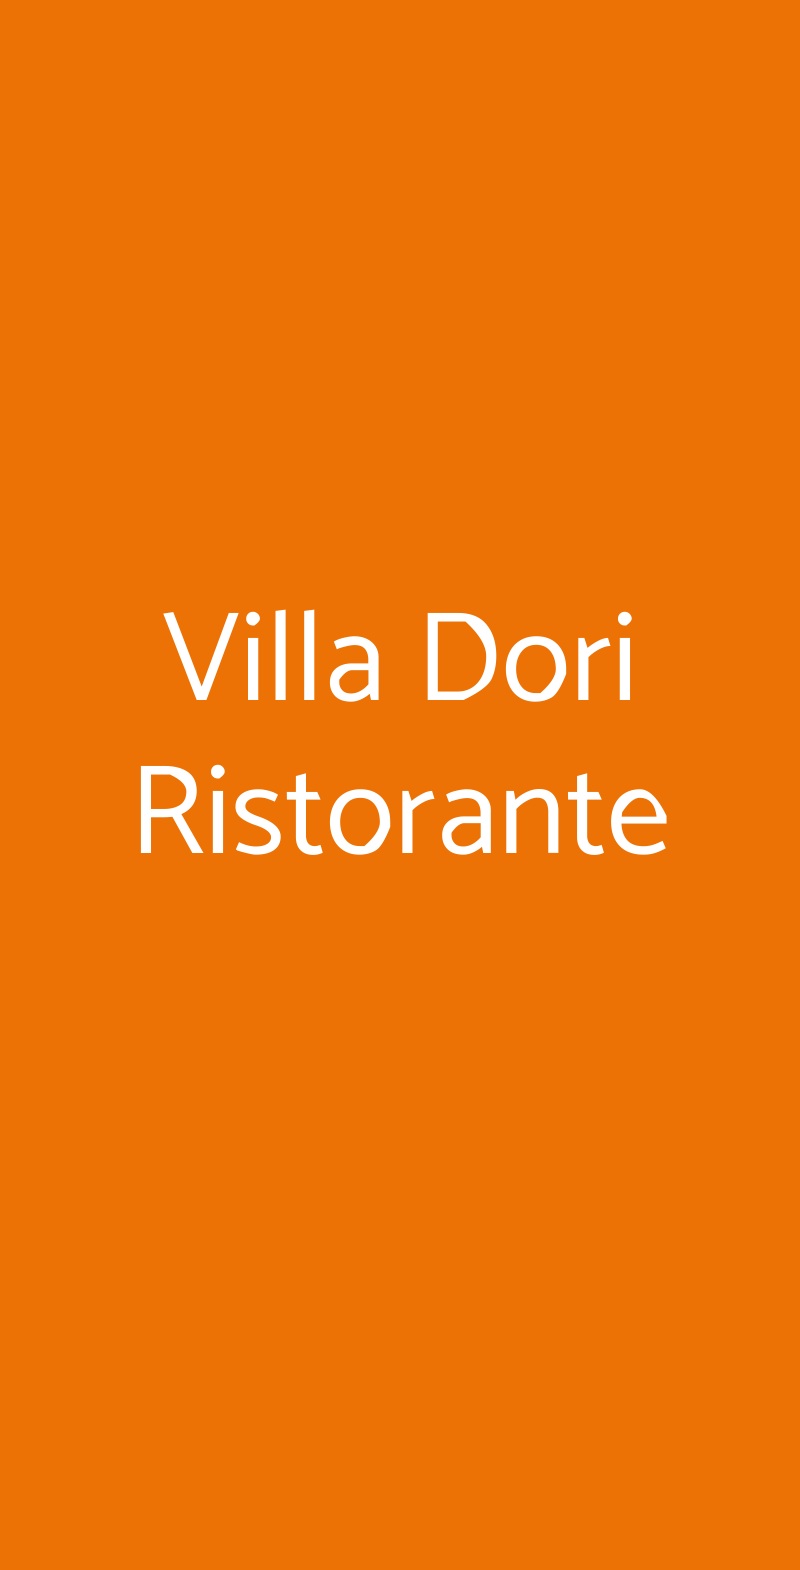 Villa Dori Ristorante Venezia menù 1 pagina